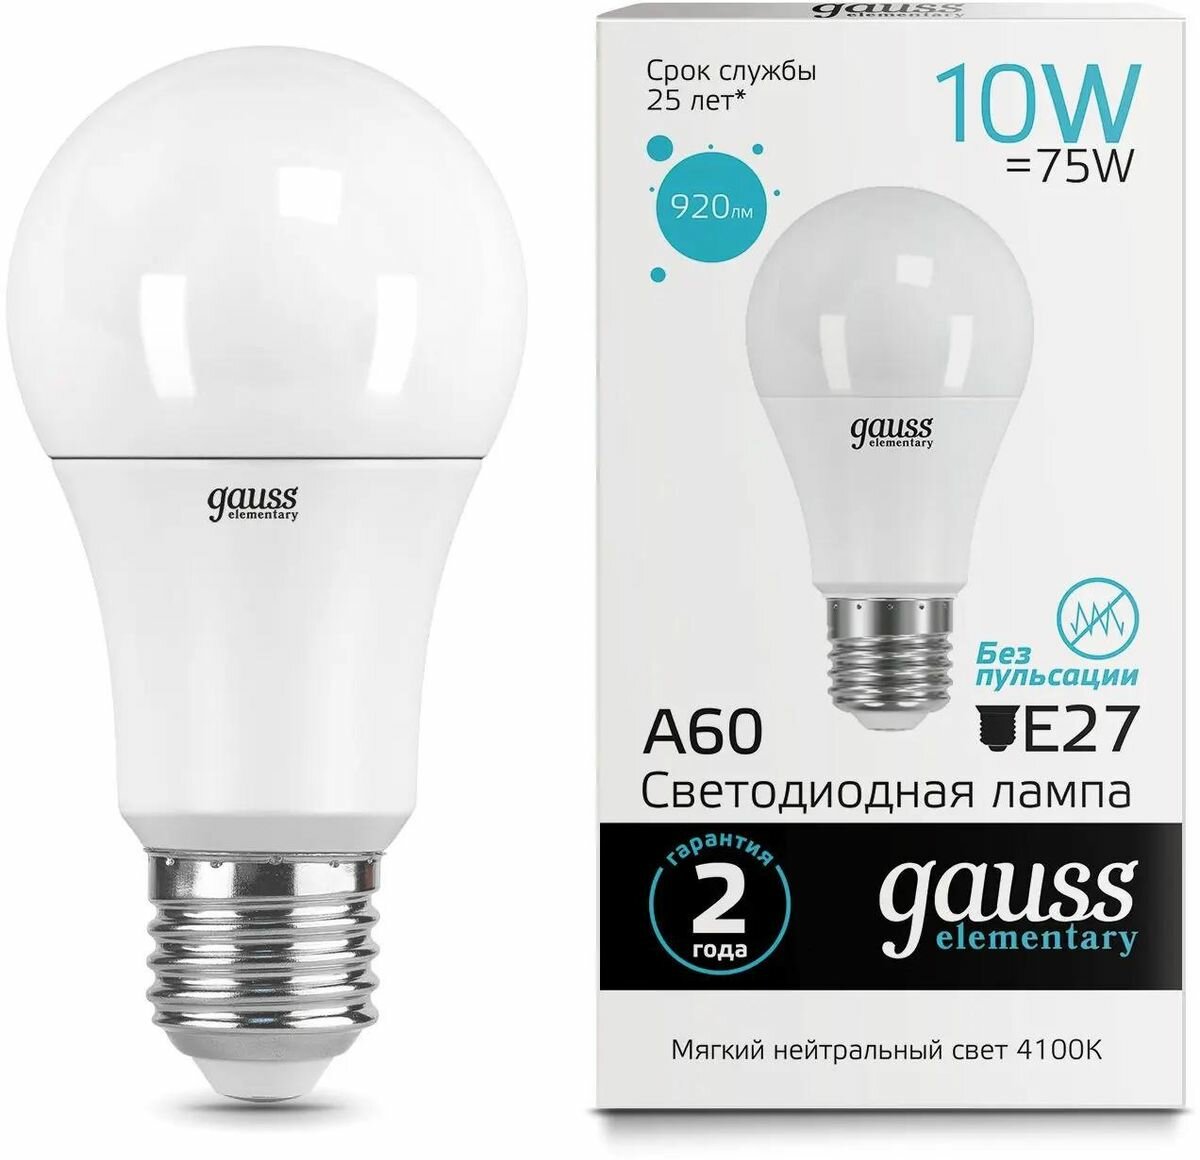 Упаковка ламп LED GAUSS E27, груша, 10Вт, 10 шт. [23220]